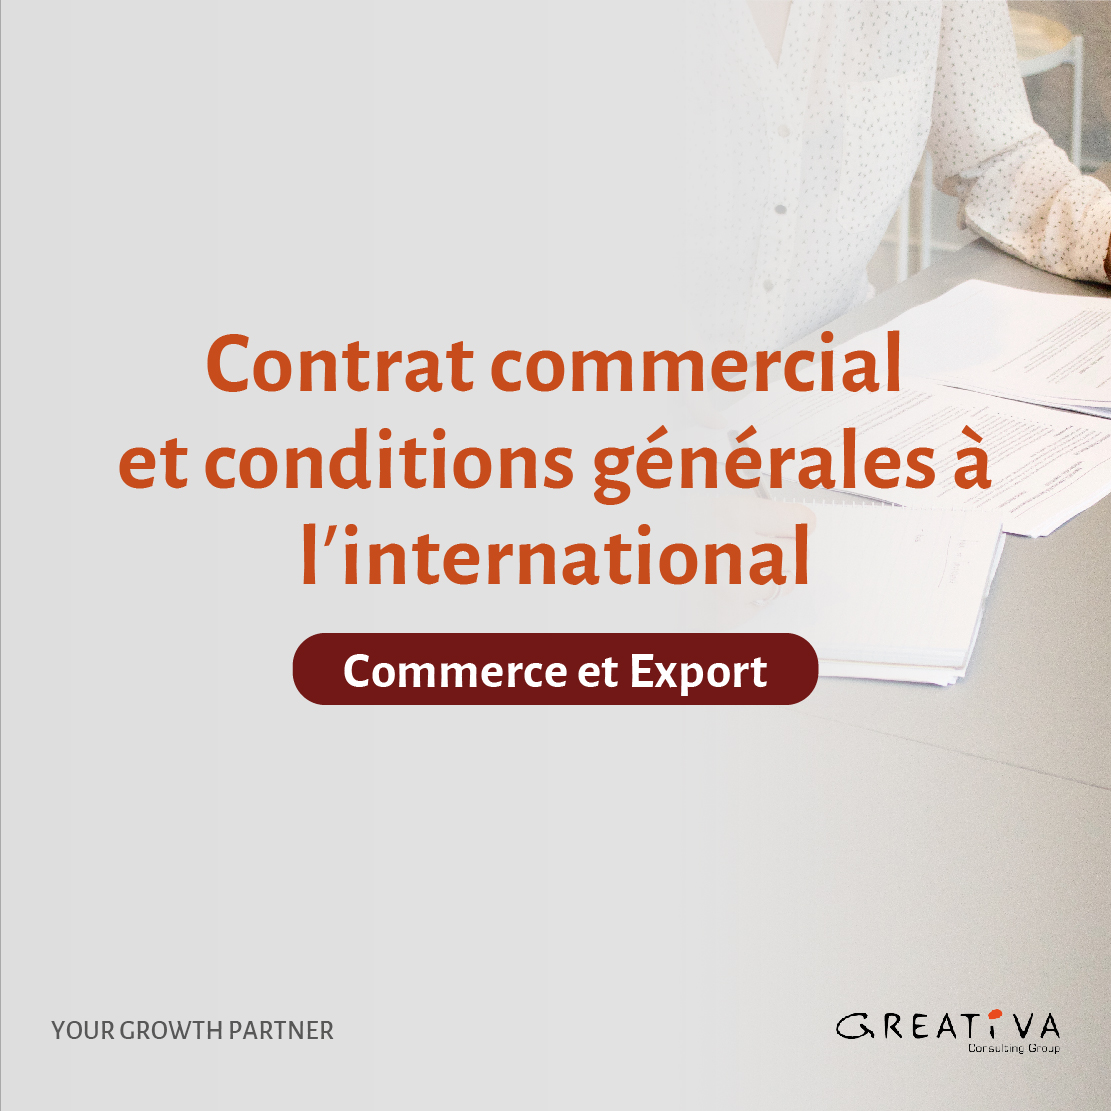 Contrat commercial et conditions générales à l’international